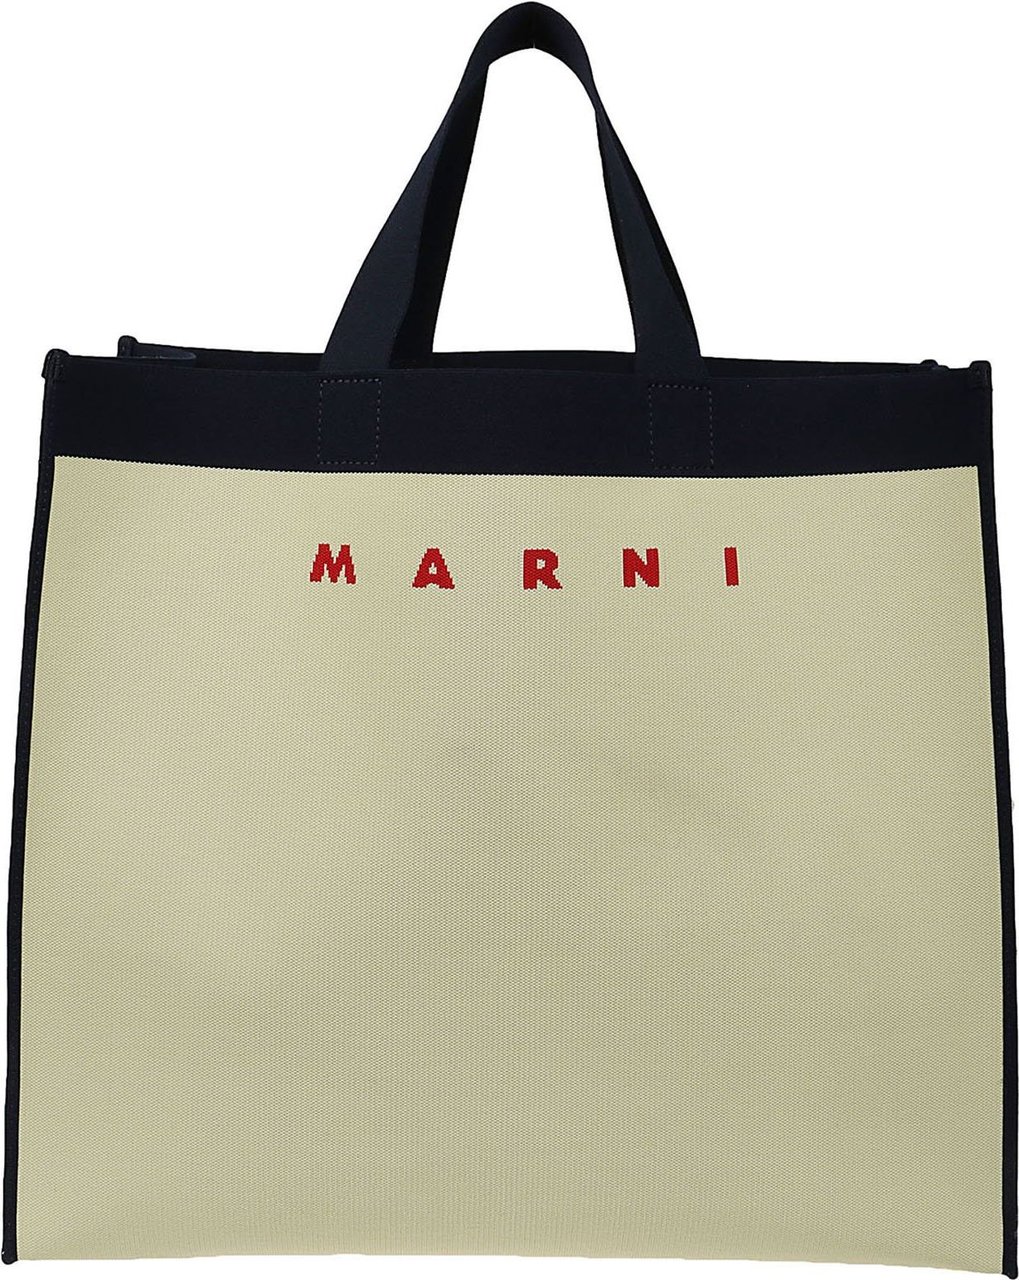 Marni Shopping Bag White Wit